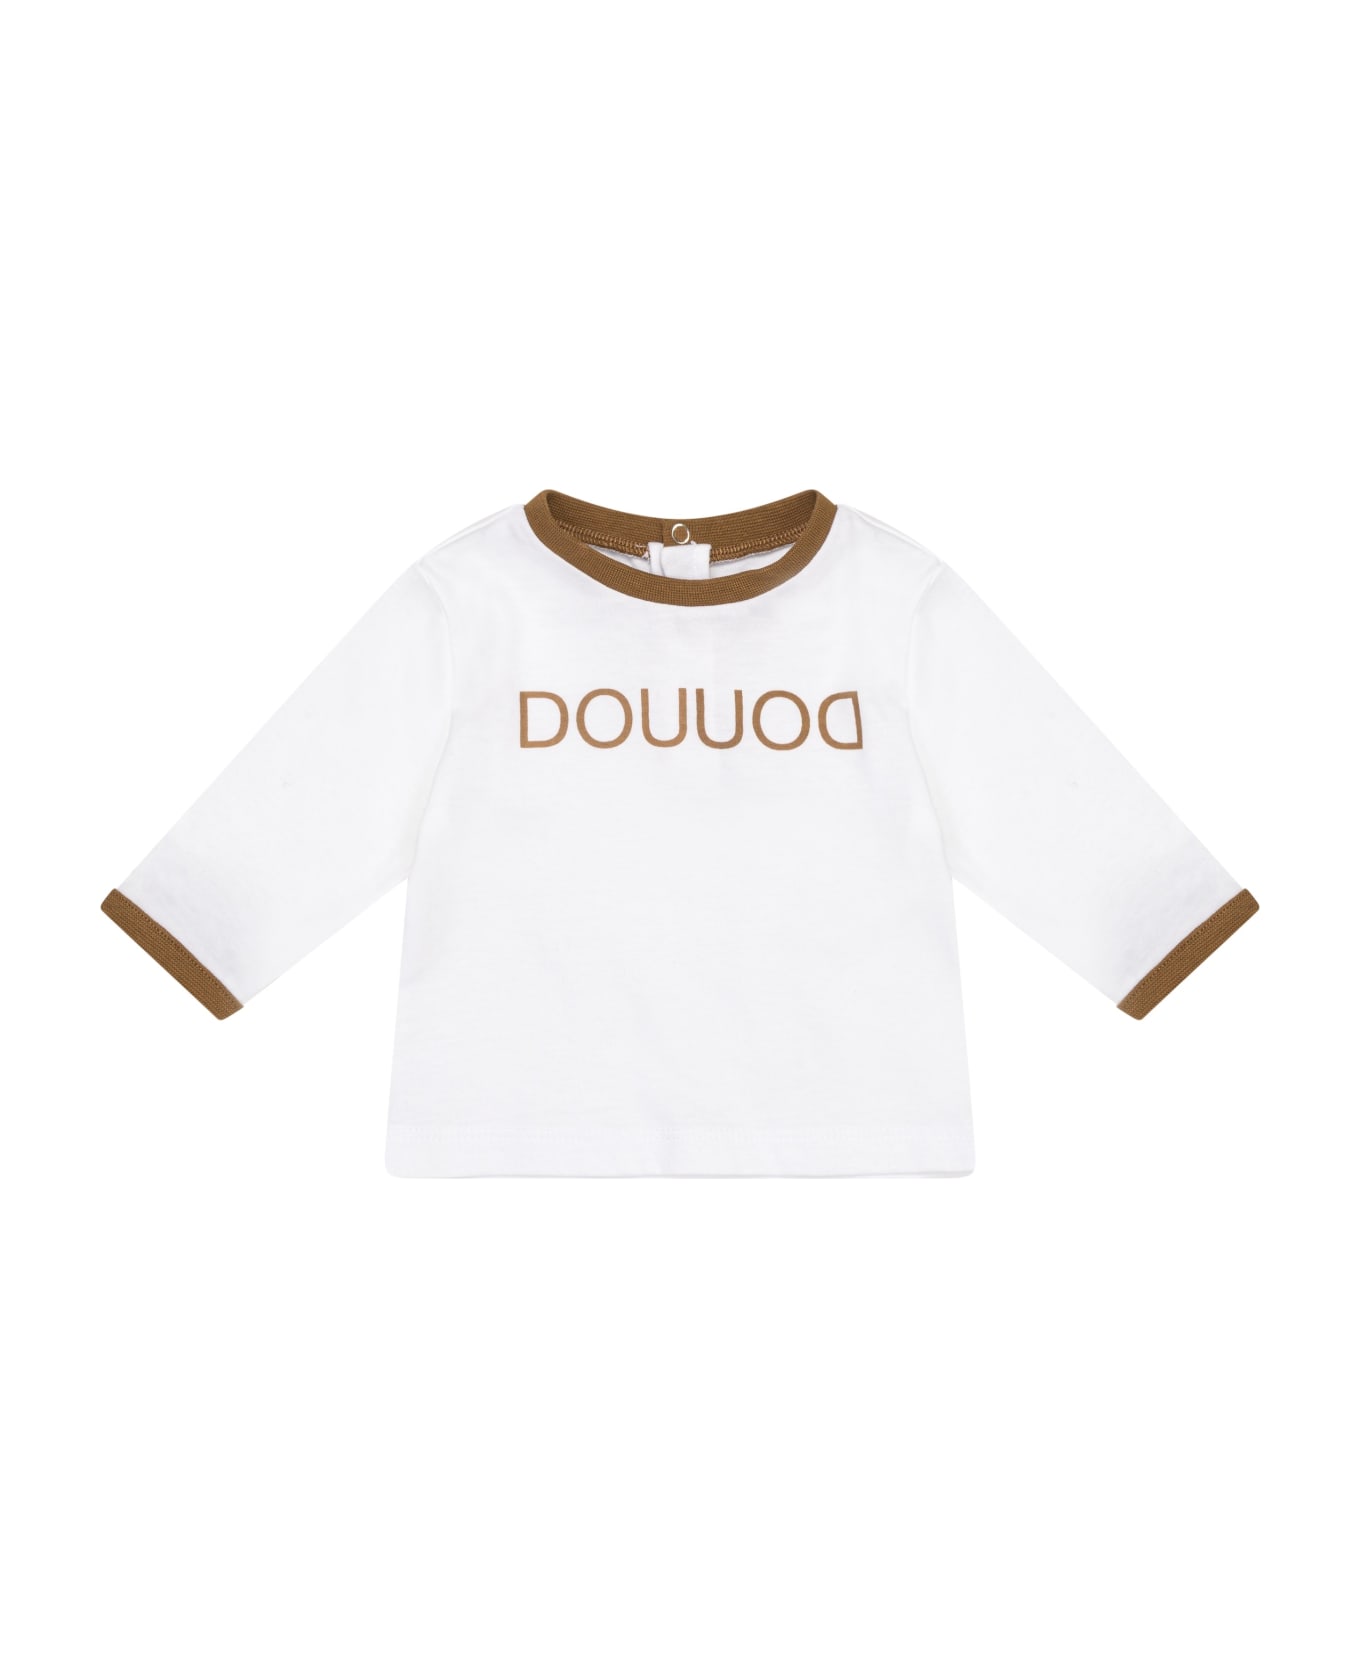 Douuod Printed T-shirt - White